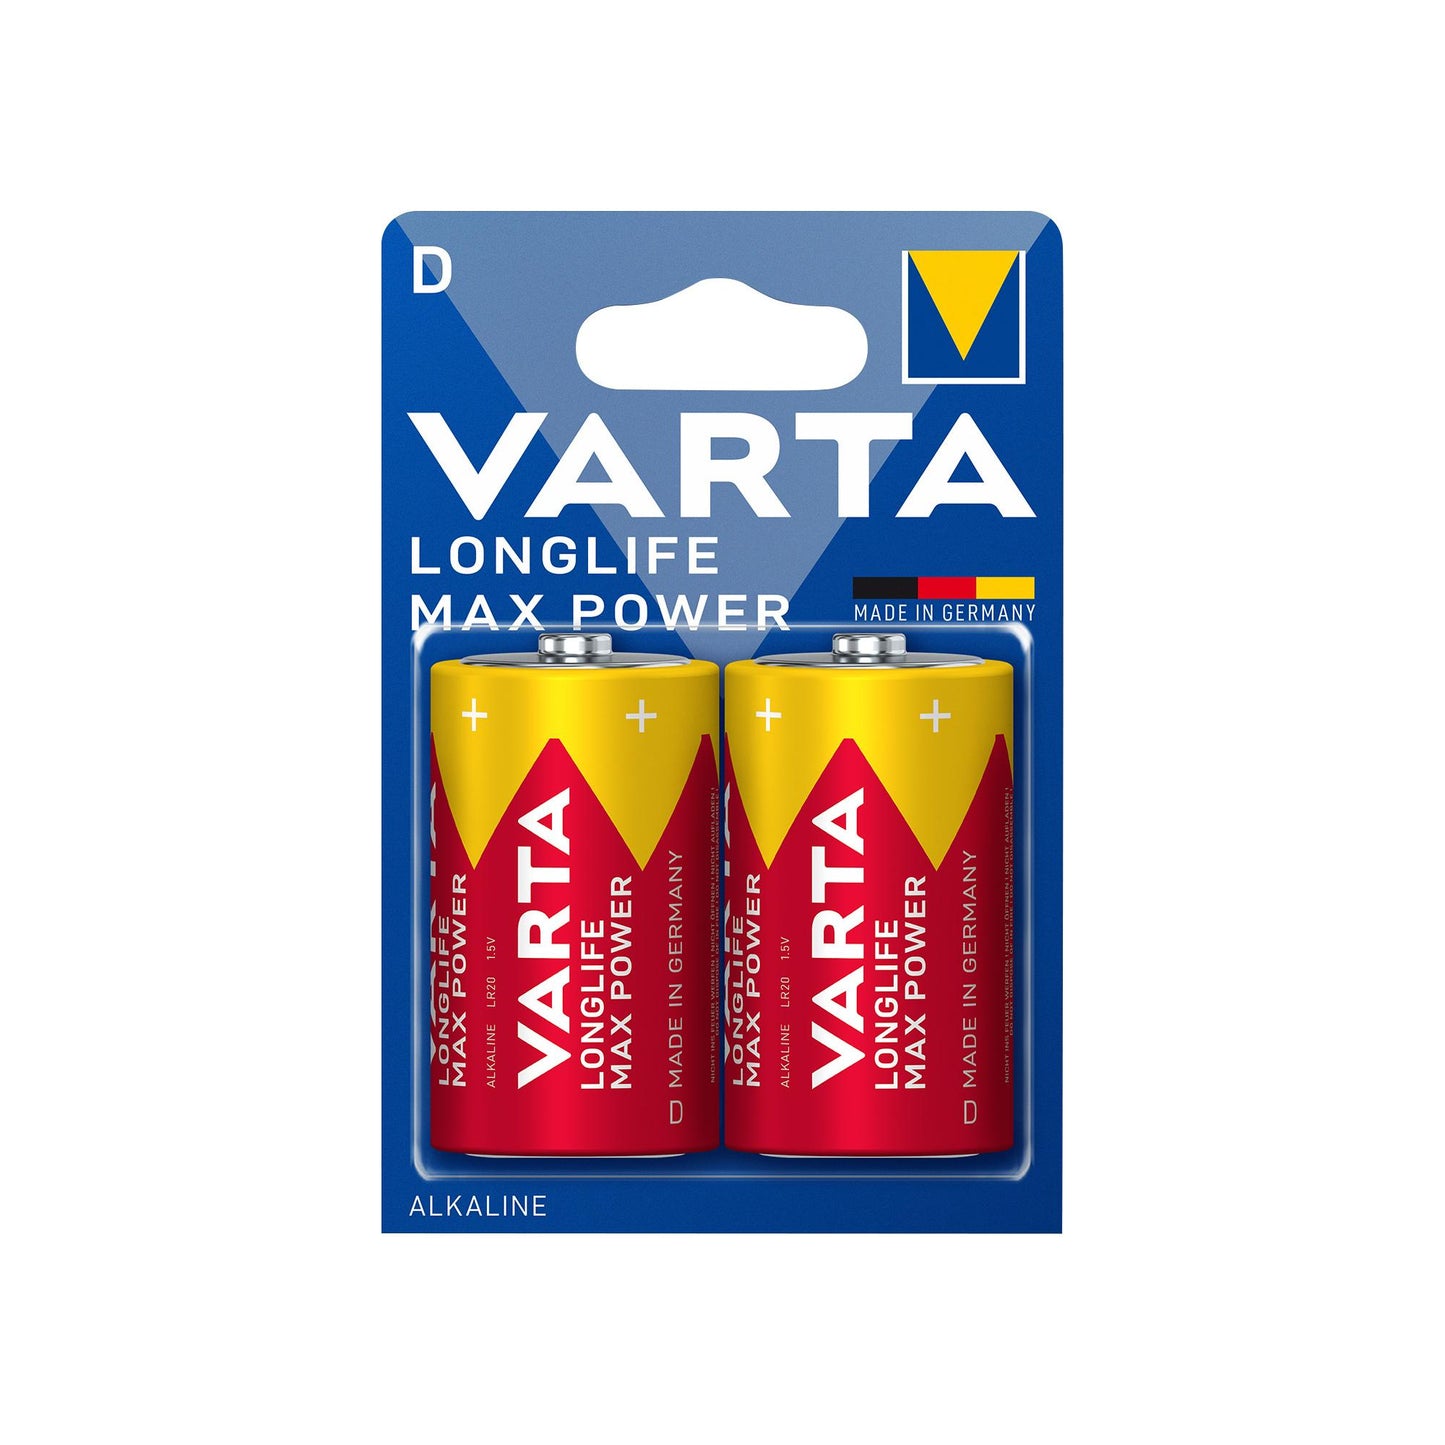 VARTA Batterie Alkaline Mono D LR20, 1.5V Longlife Max Power, Retail Blister (2-Pack)